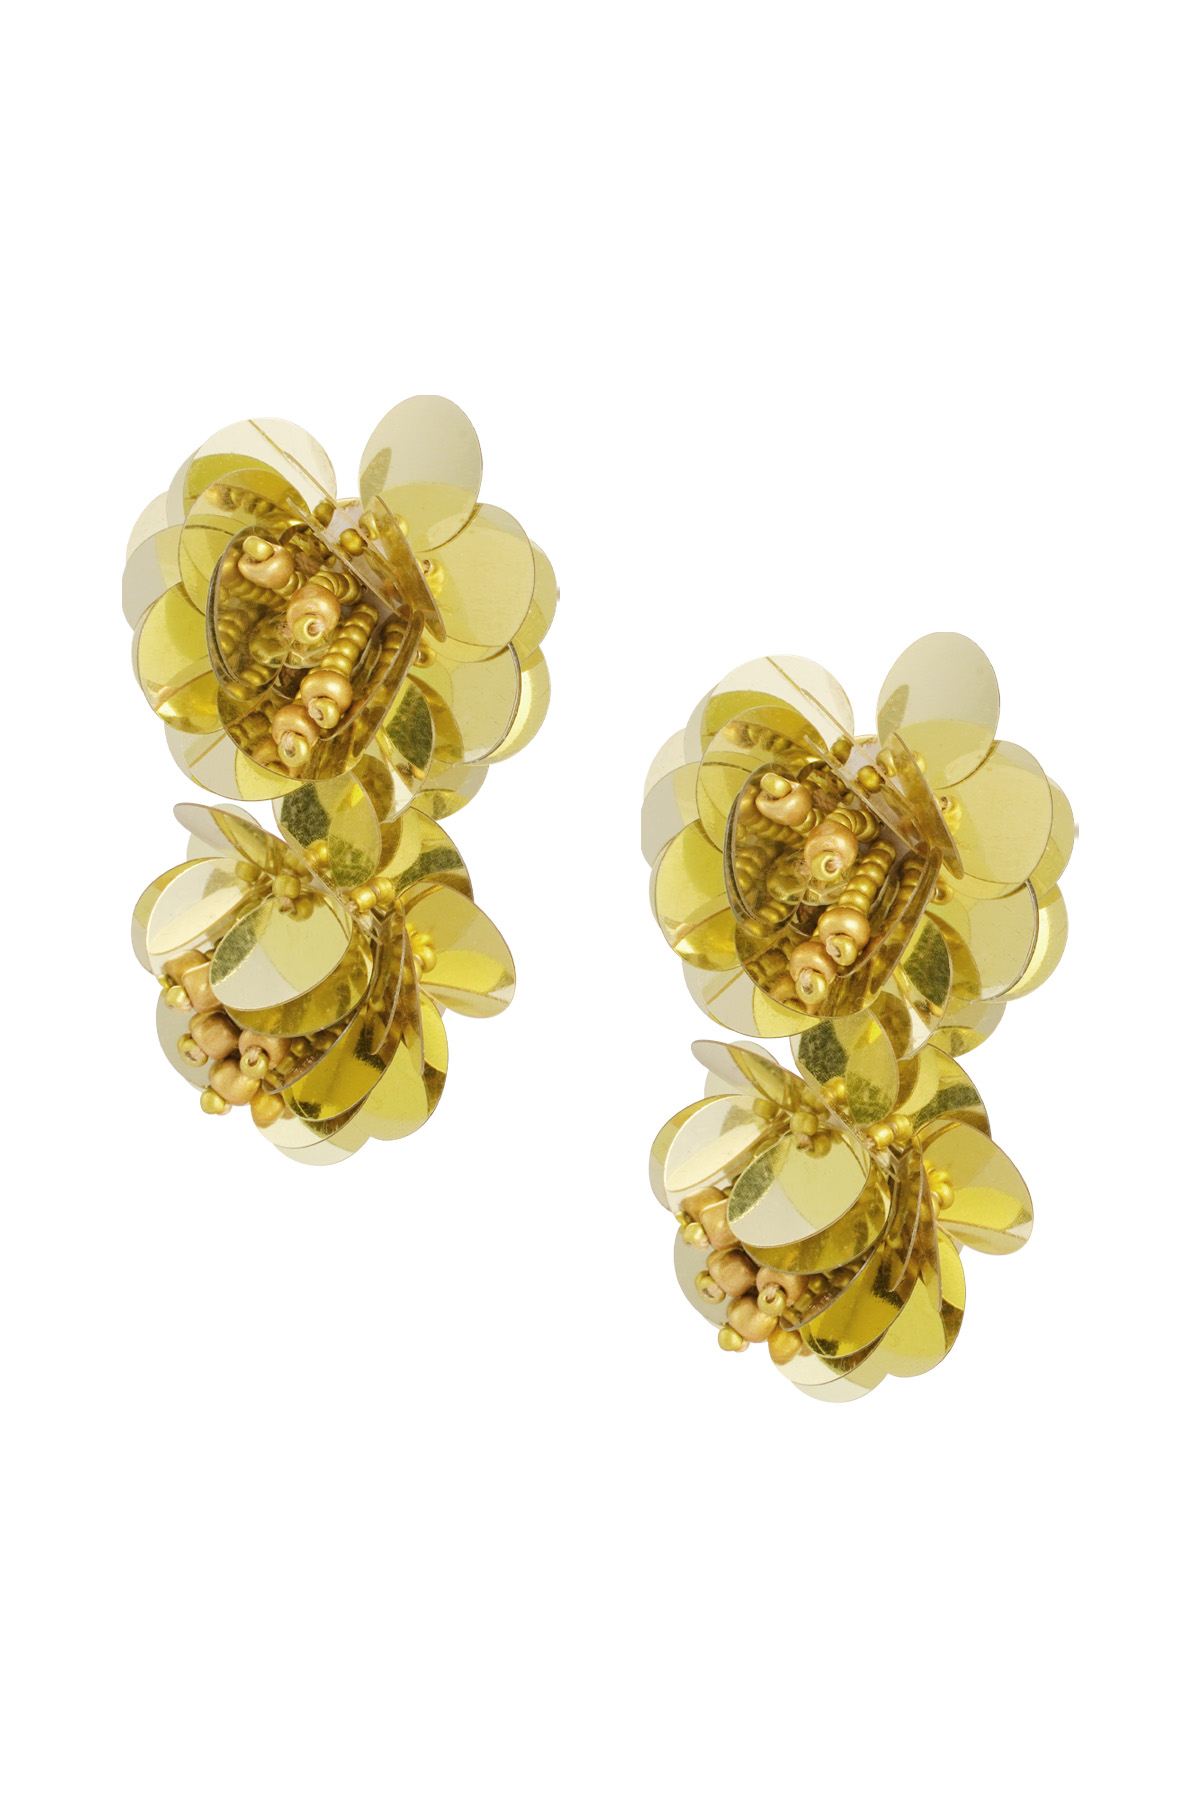 Earrings rose spirit - gold h5 